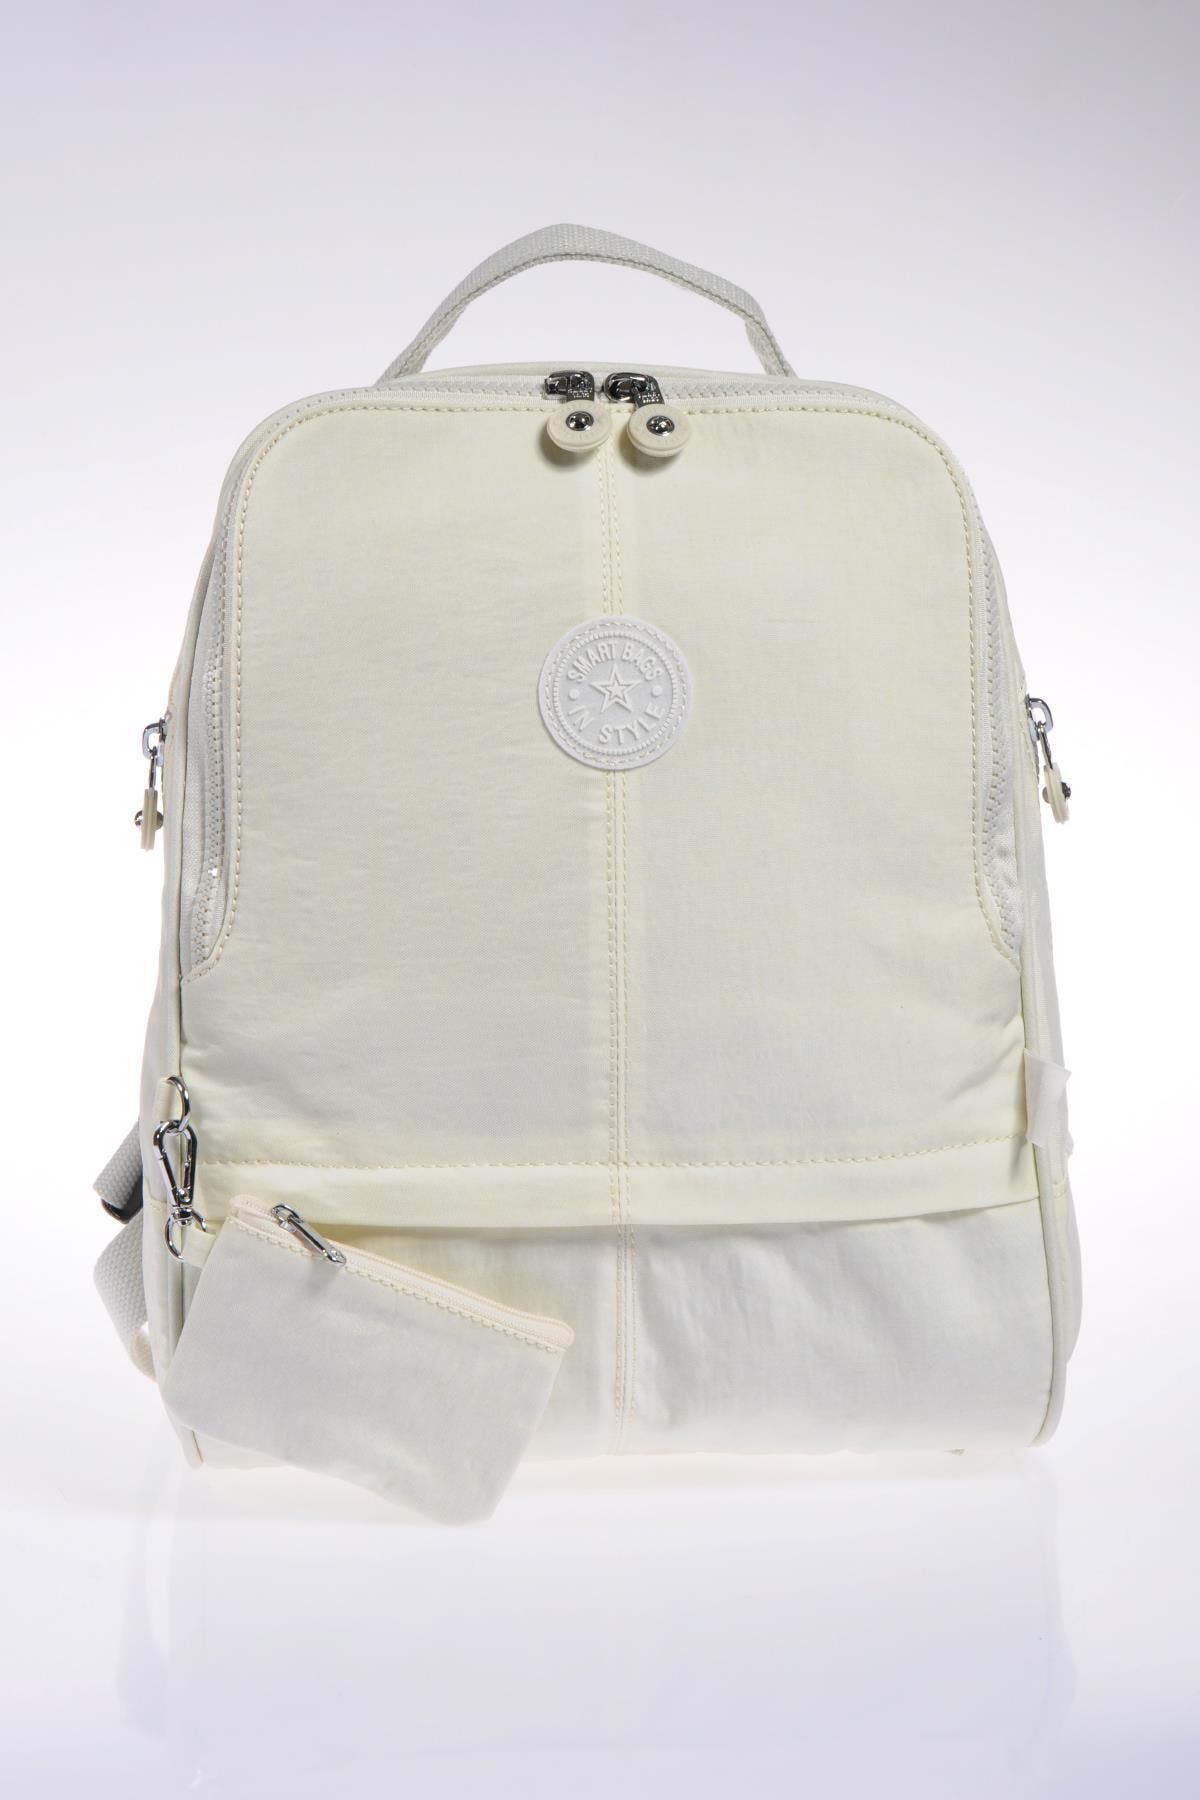 Smart Bags Smb1117-0002 K.beyaz Kadın Sırt Çantası